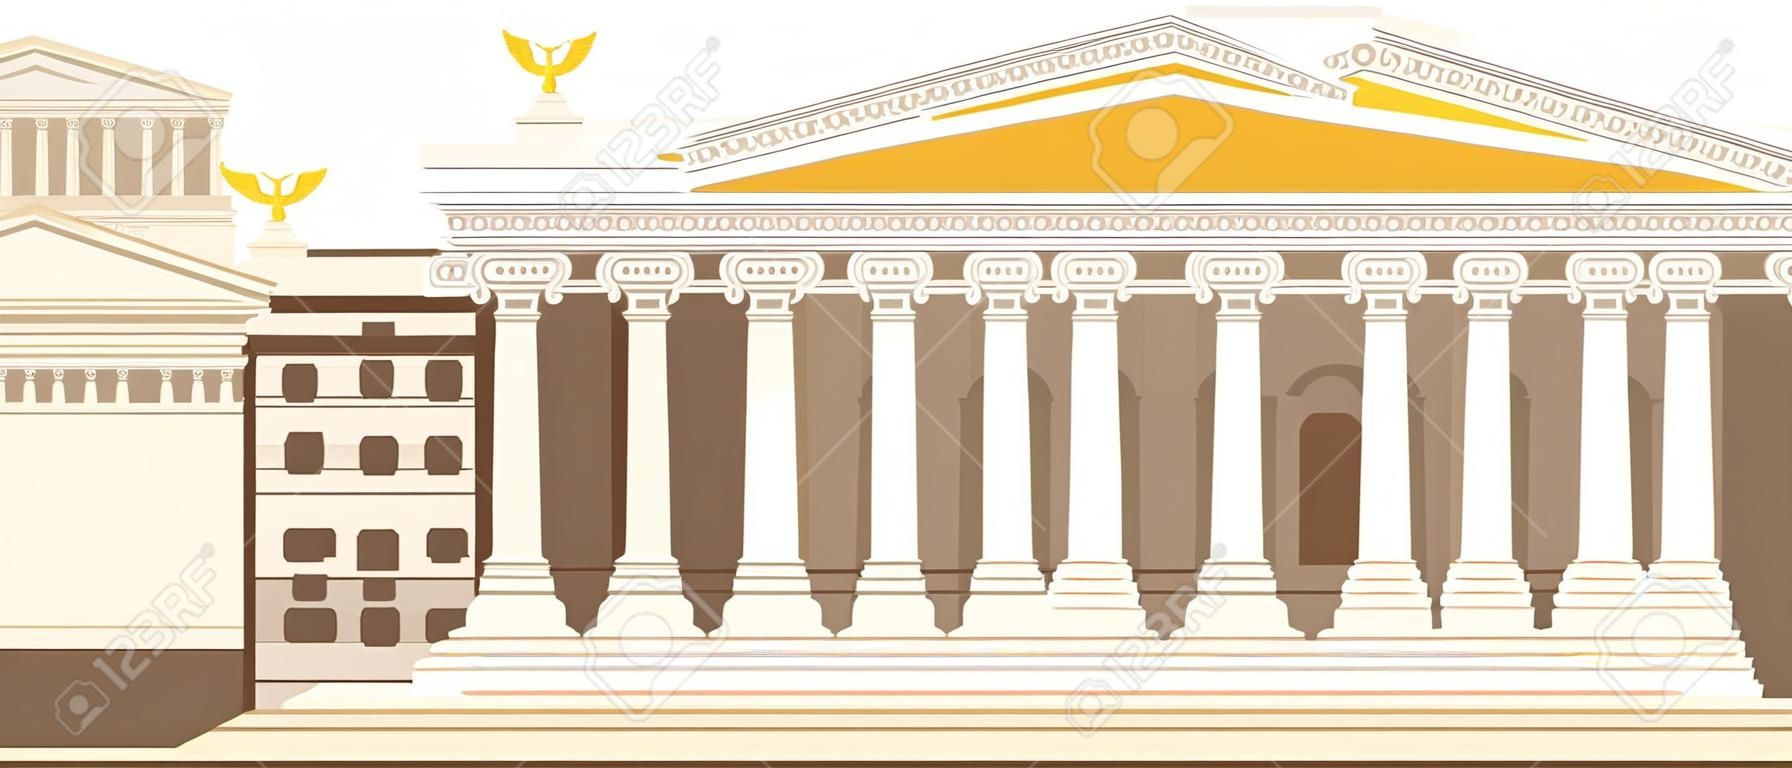 Starożytna rzymska kolumna świątyni panteonu budująca kafelki rzymskie, strategiczny rozwój kultury antycznej. włoski panteon, stara świątynia na placu miejskim. tradycyjny krajobraz historyczny starożytność